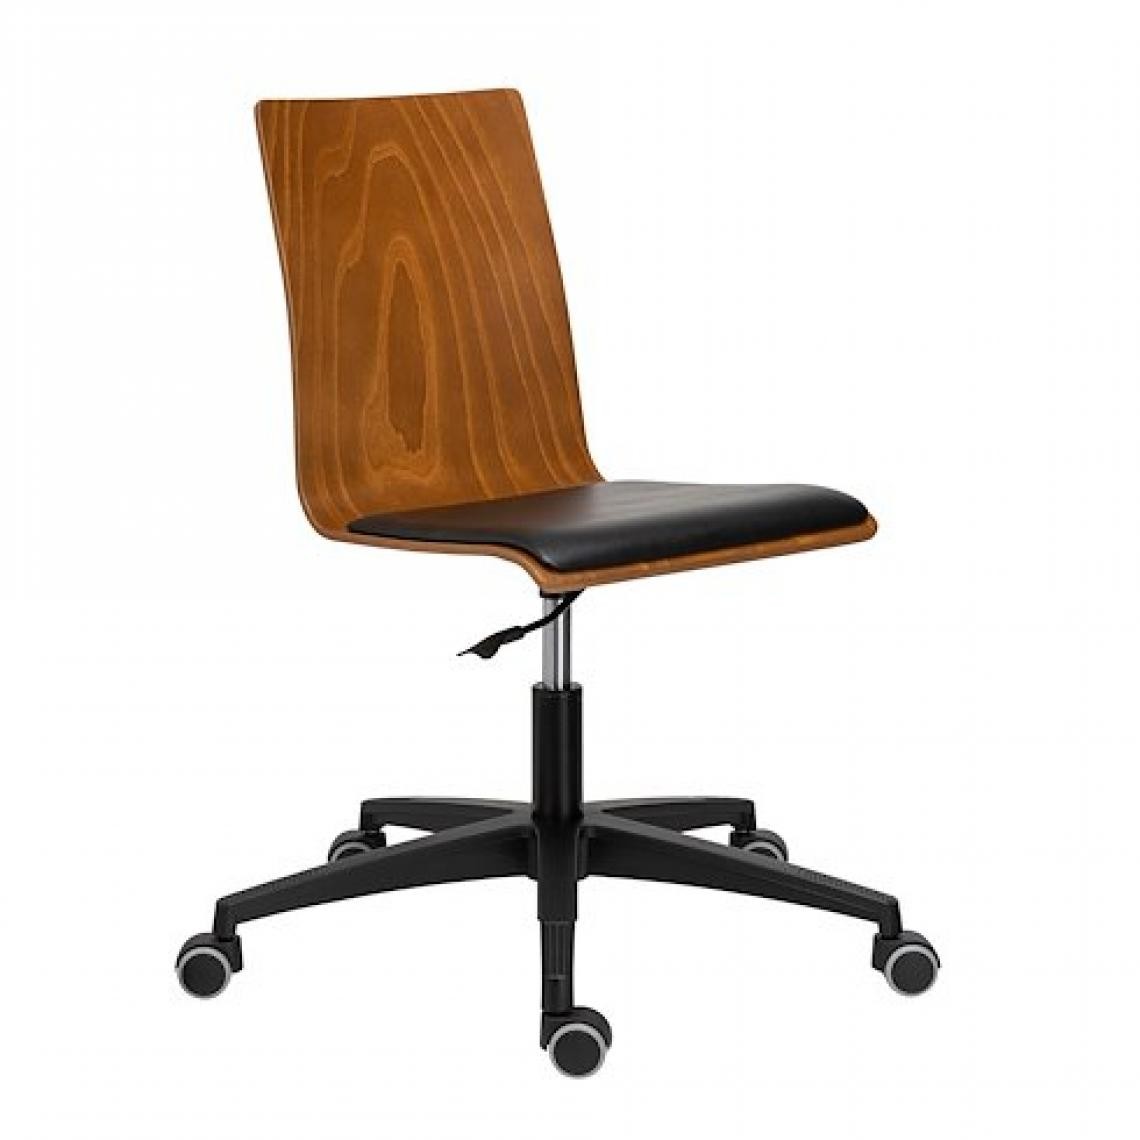 marque generique - Chaise de bureau JADE - bois teinté - Chaises